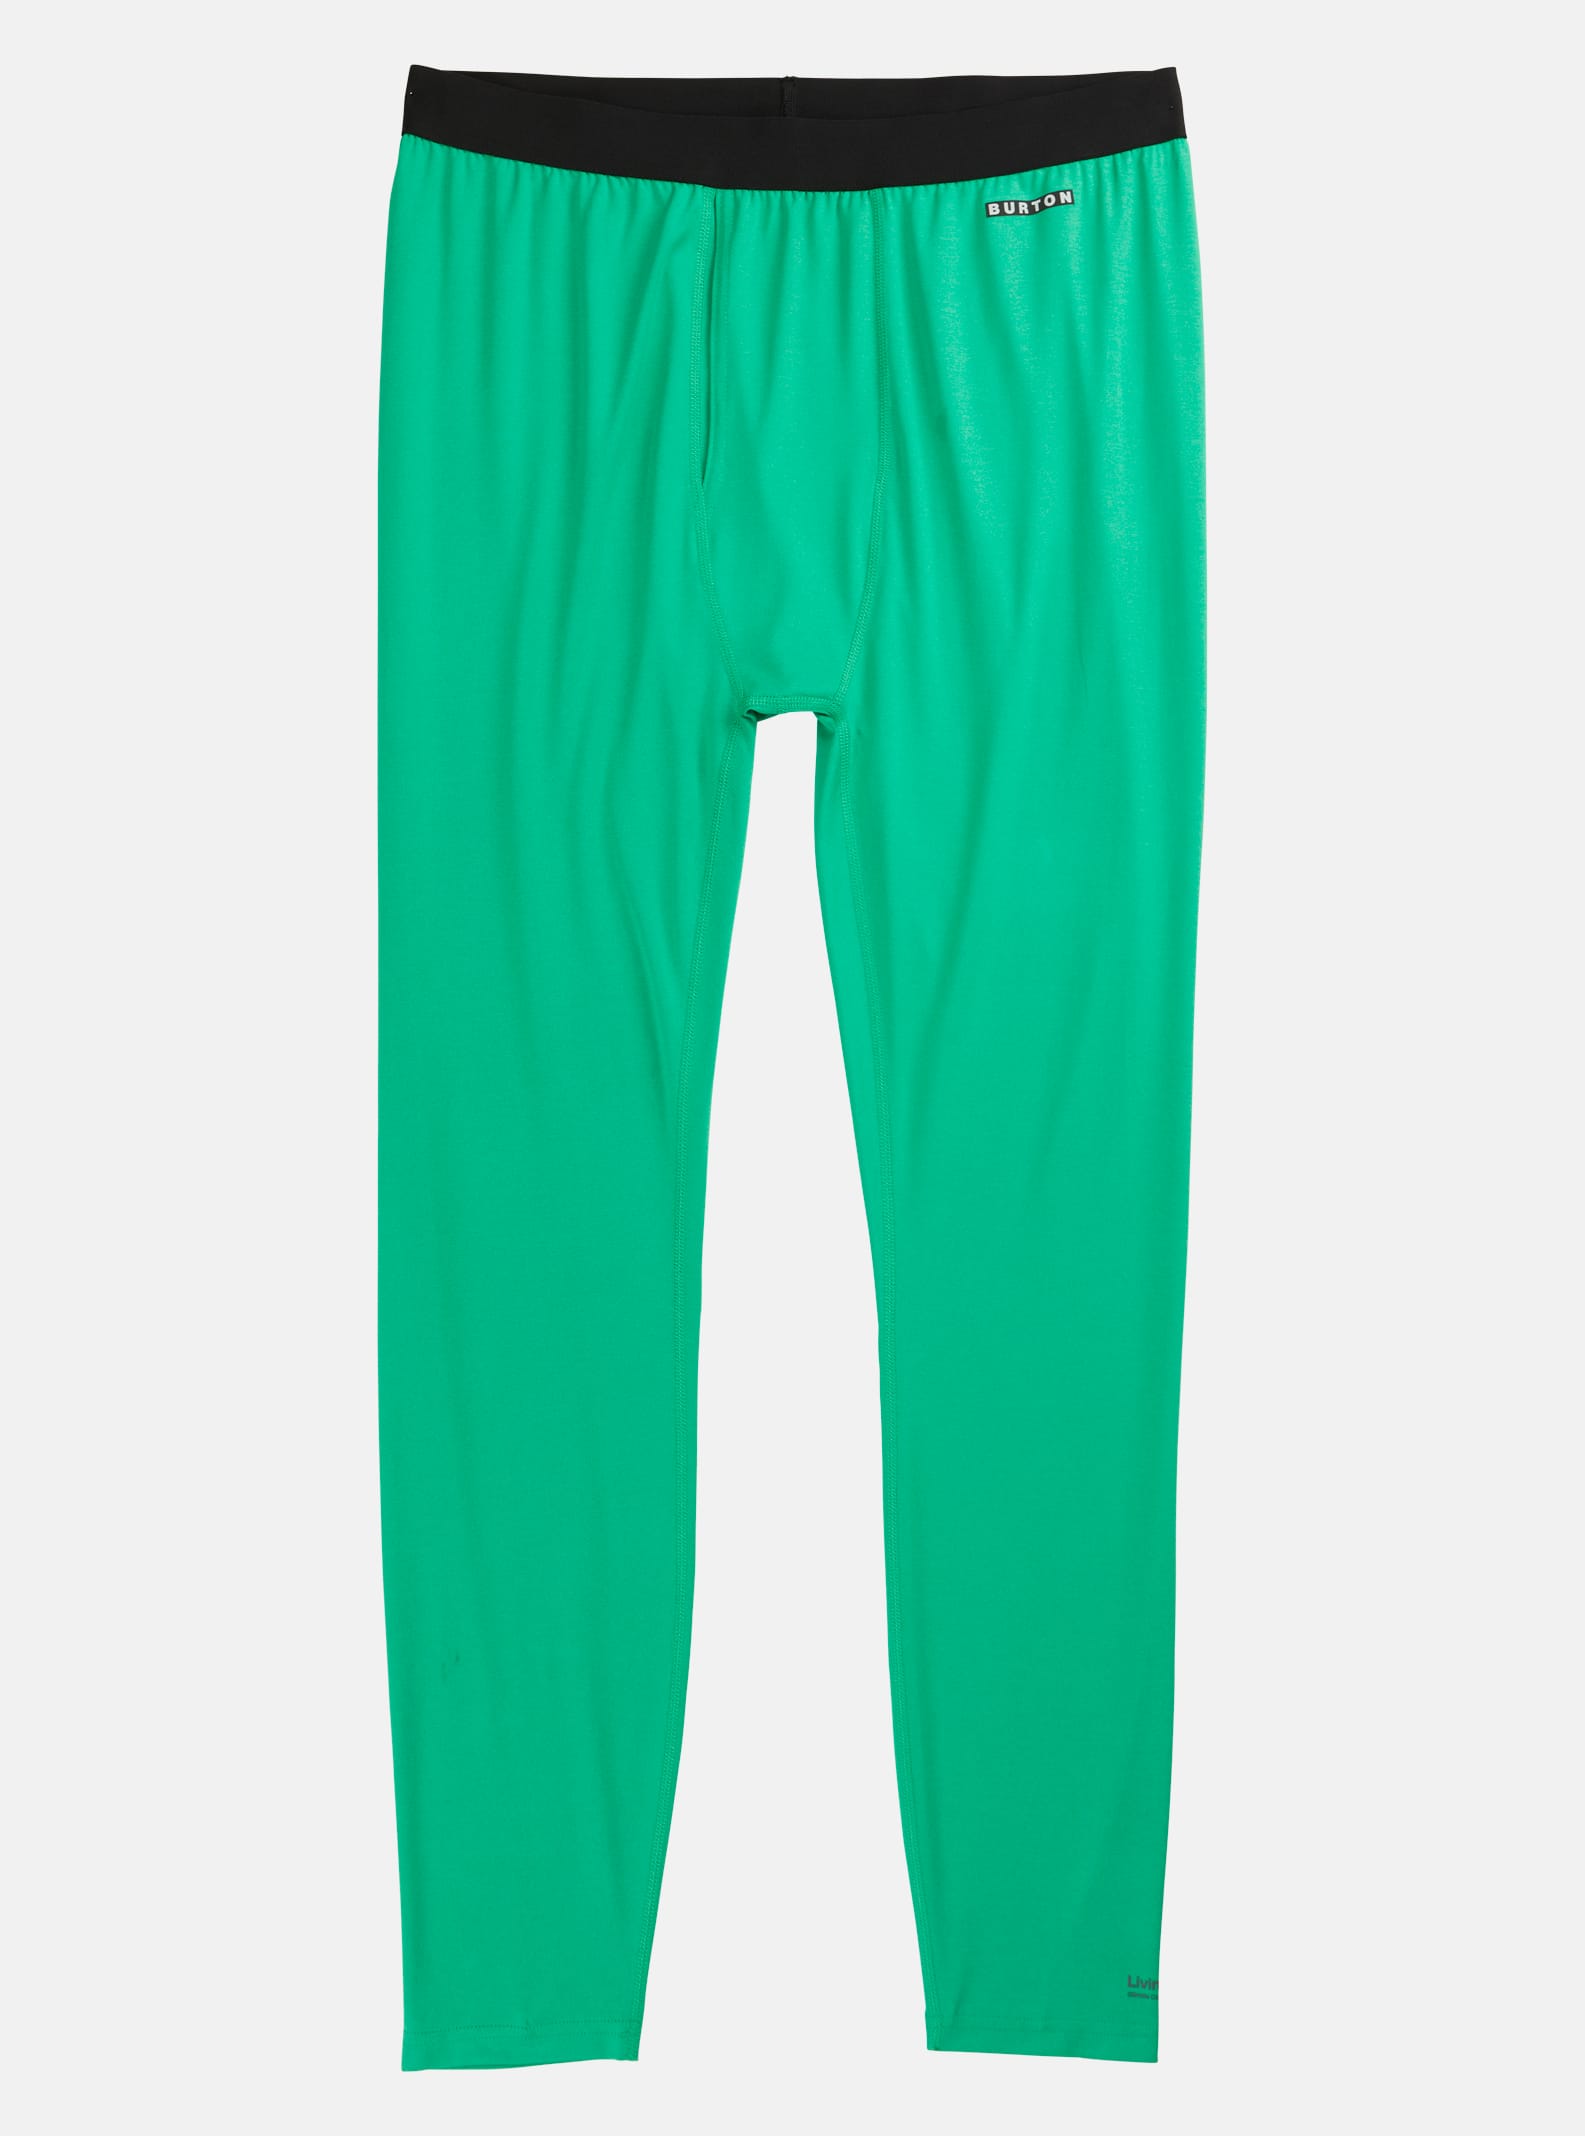 Burton - Pantalon sous-vêtement Lightweight X homme, Clover Green, L